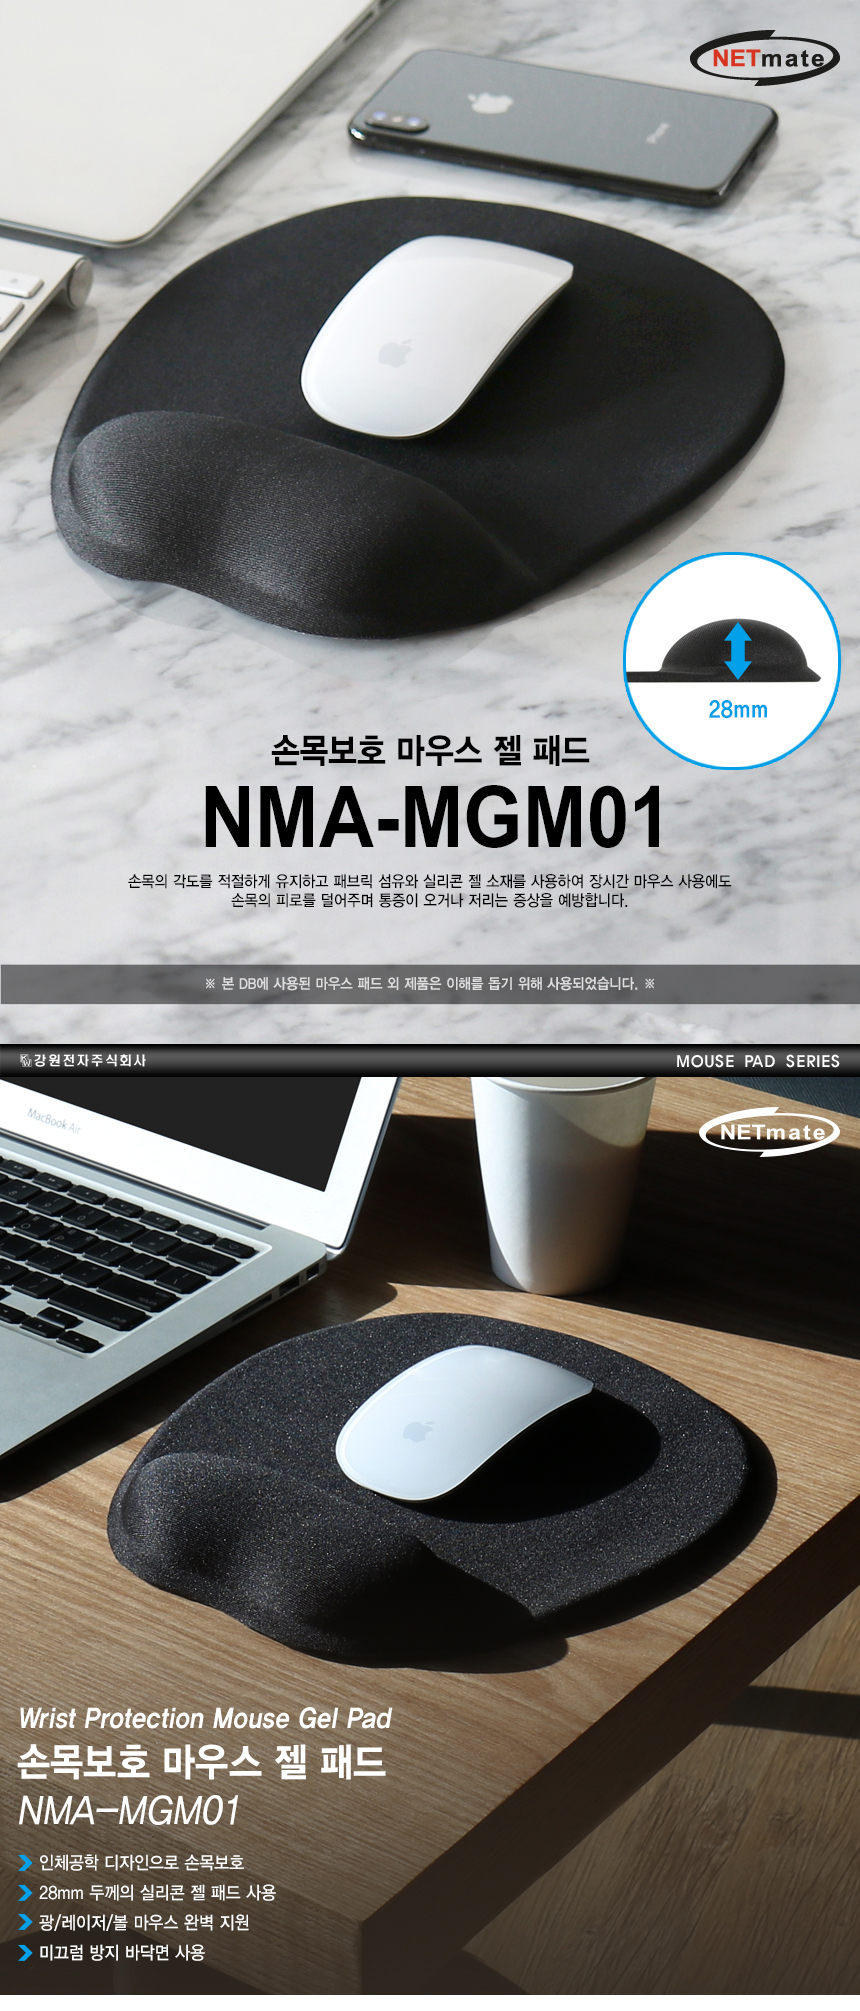 NMA-MGM01_01_01.jpg